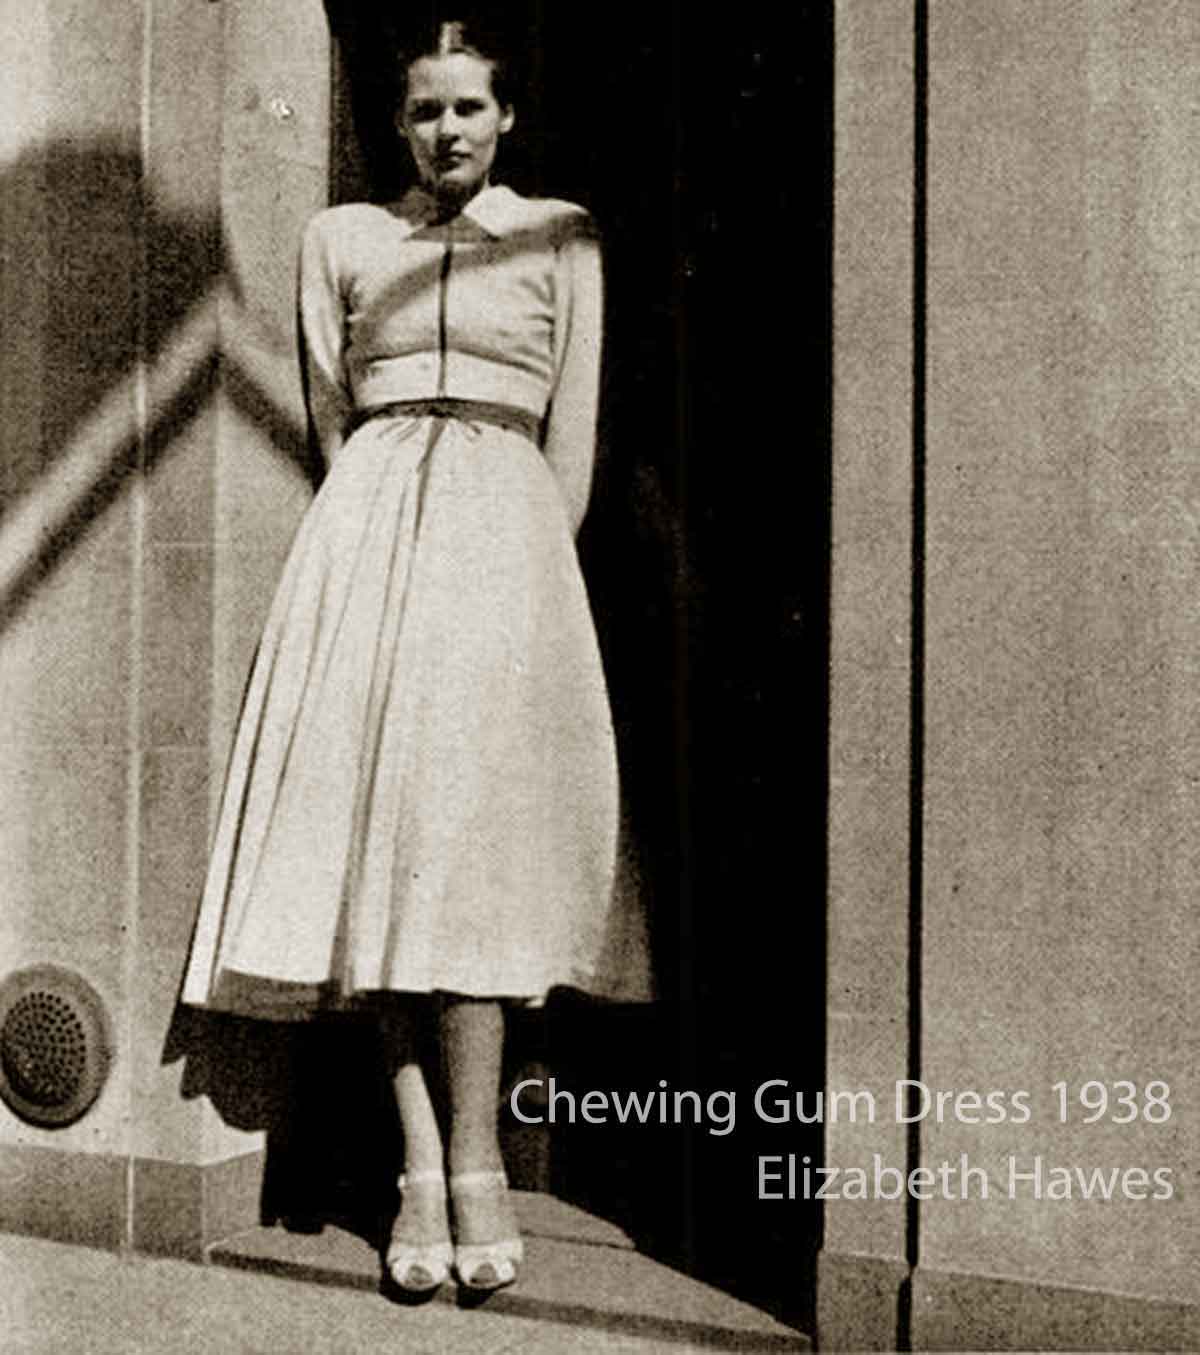 Elizabeth-Hawes--The-Chewing-Gum-Dress-1938